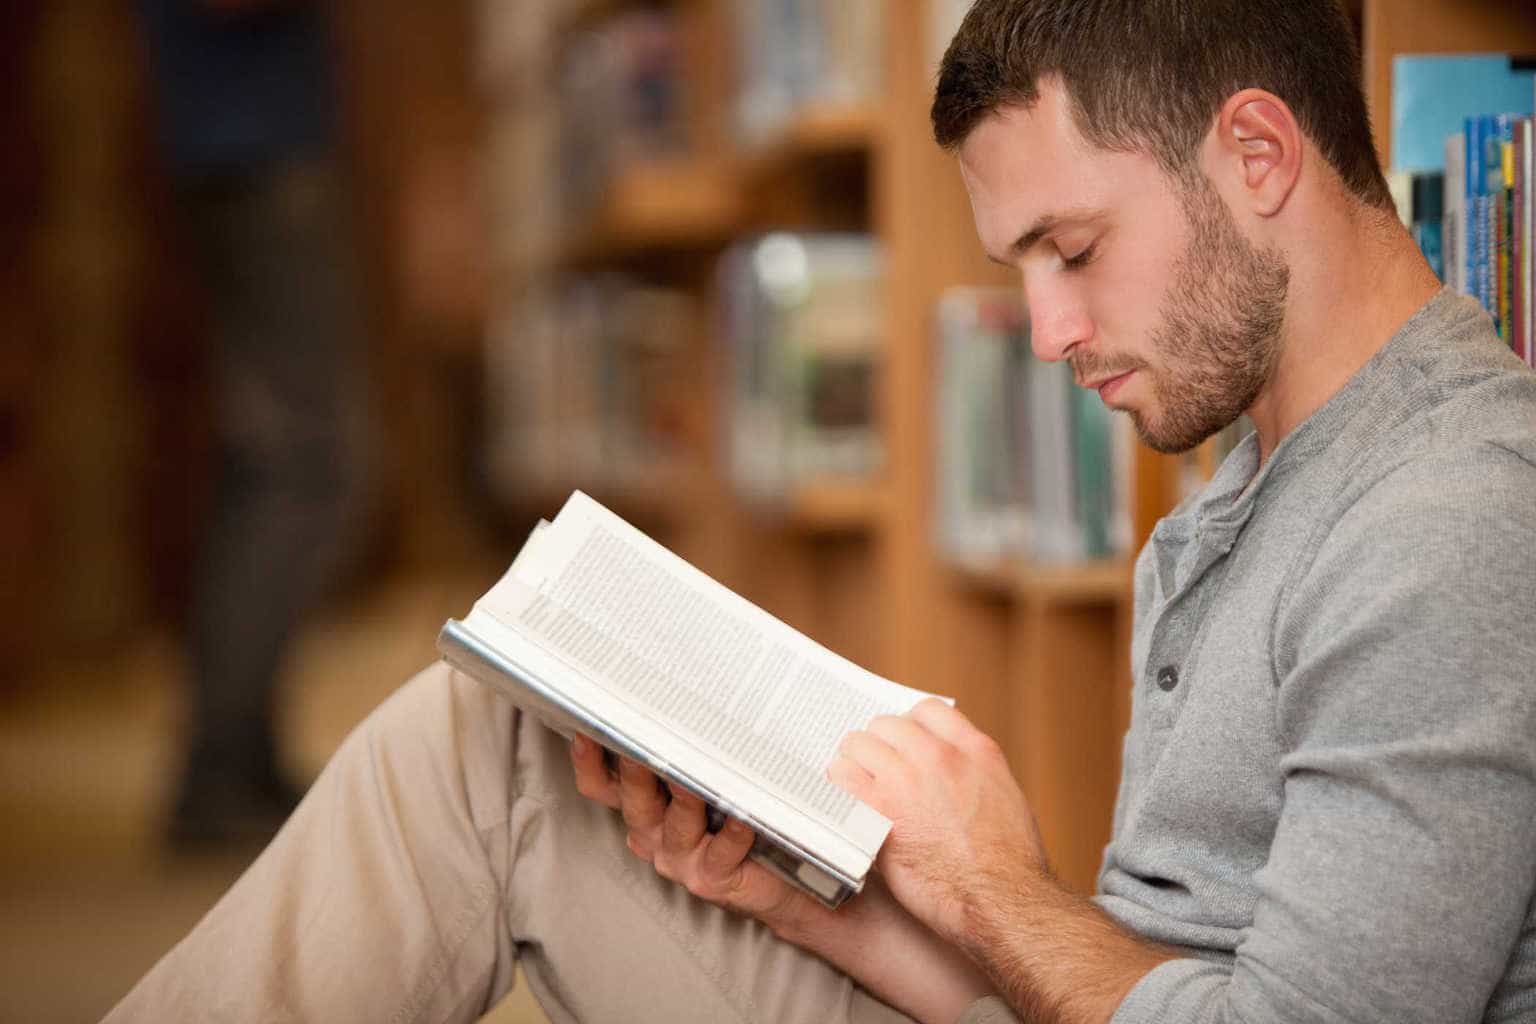 Orang yang suka membaca buku menjalani kehidupan yang lebih bahagia